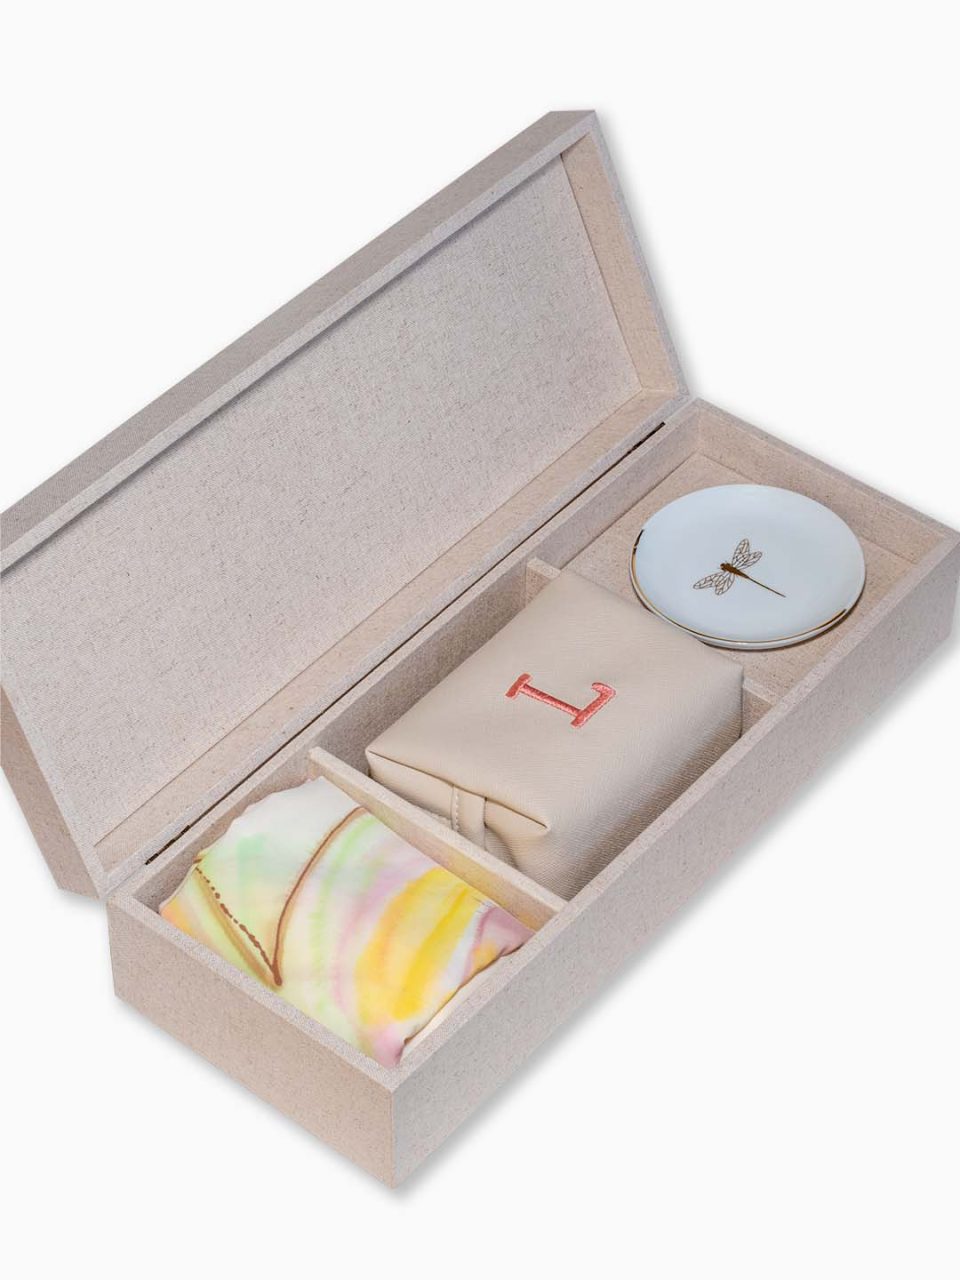 Kit Good Memories II : caixa forrada com linho + lenço, joia do dia e necessaire em couro sintético com inicial bordada